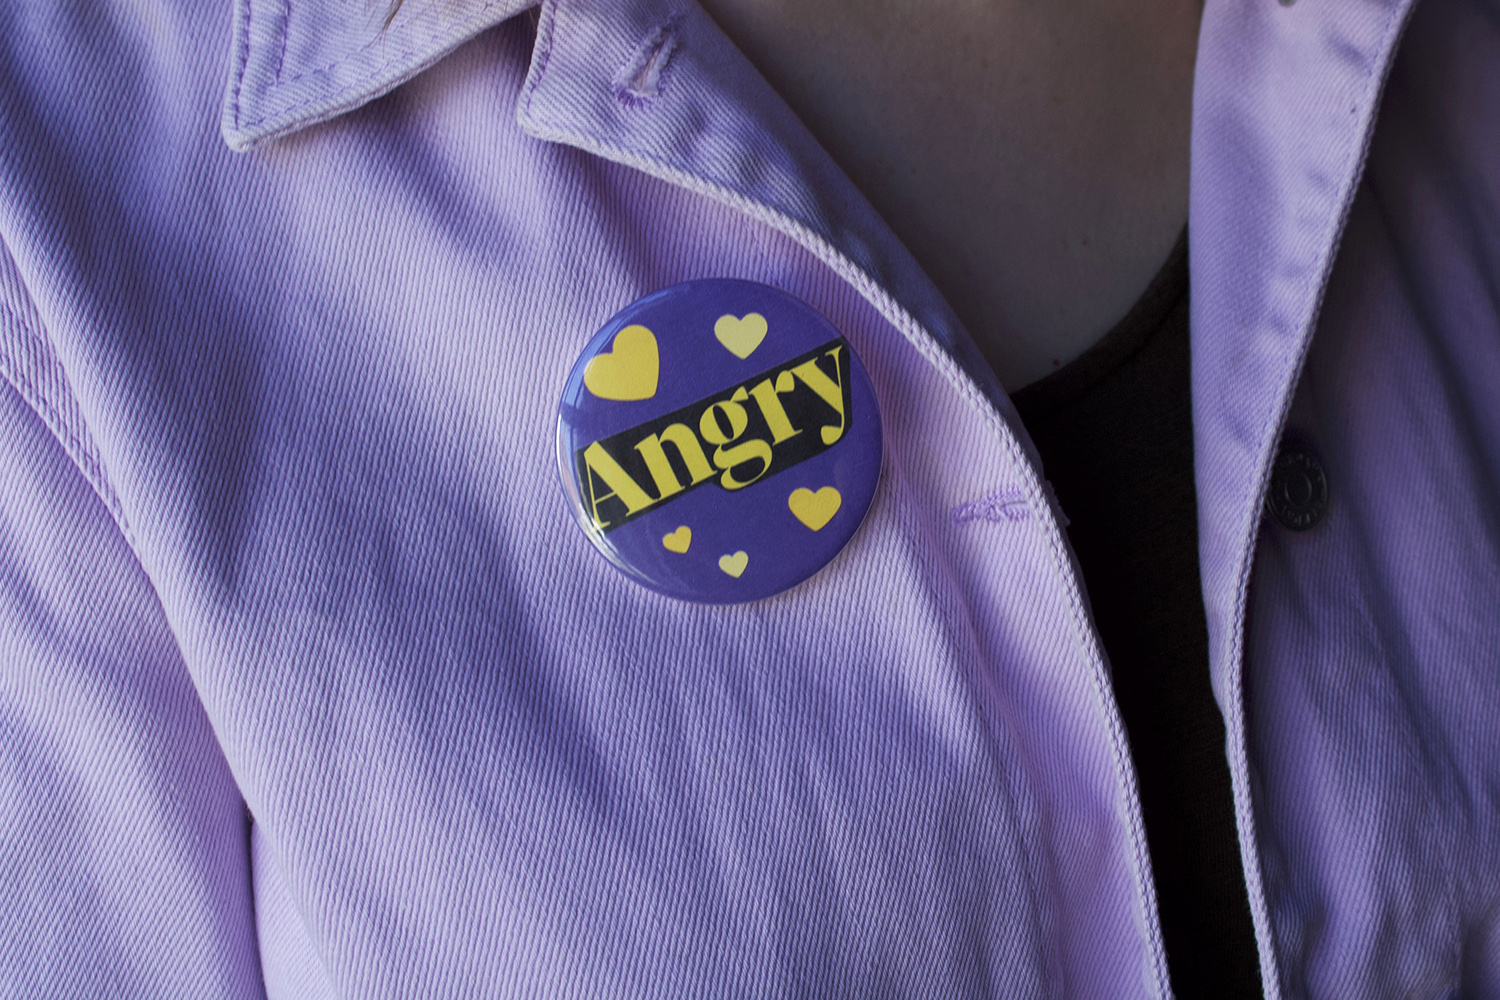 Angry badge on shirt